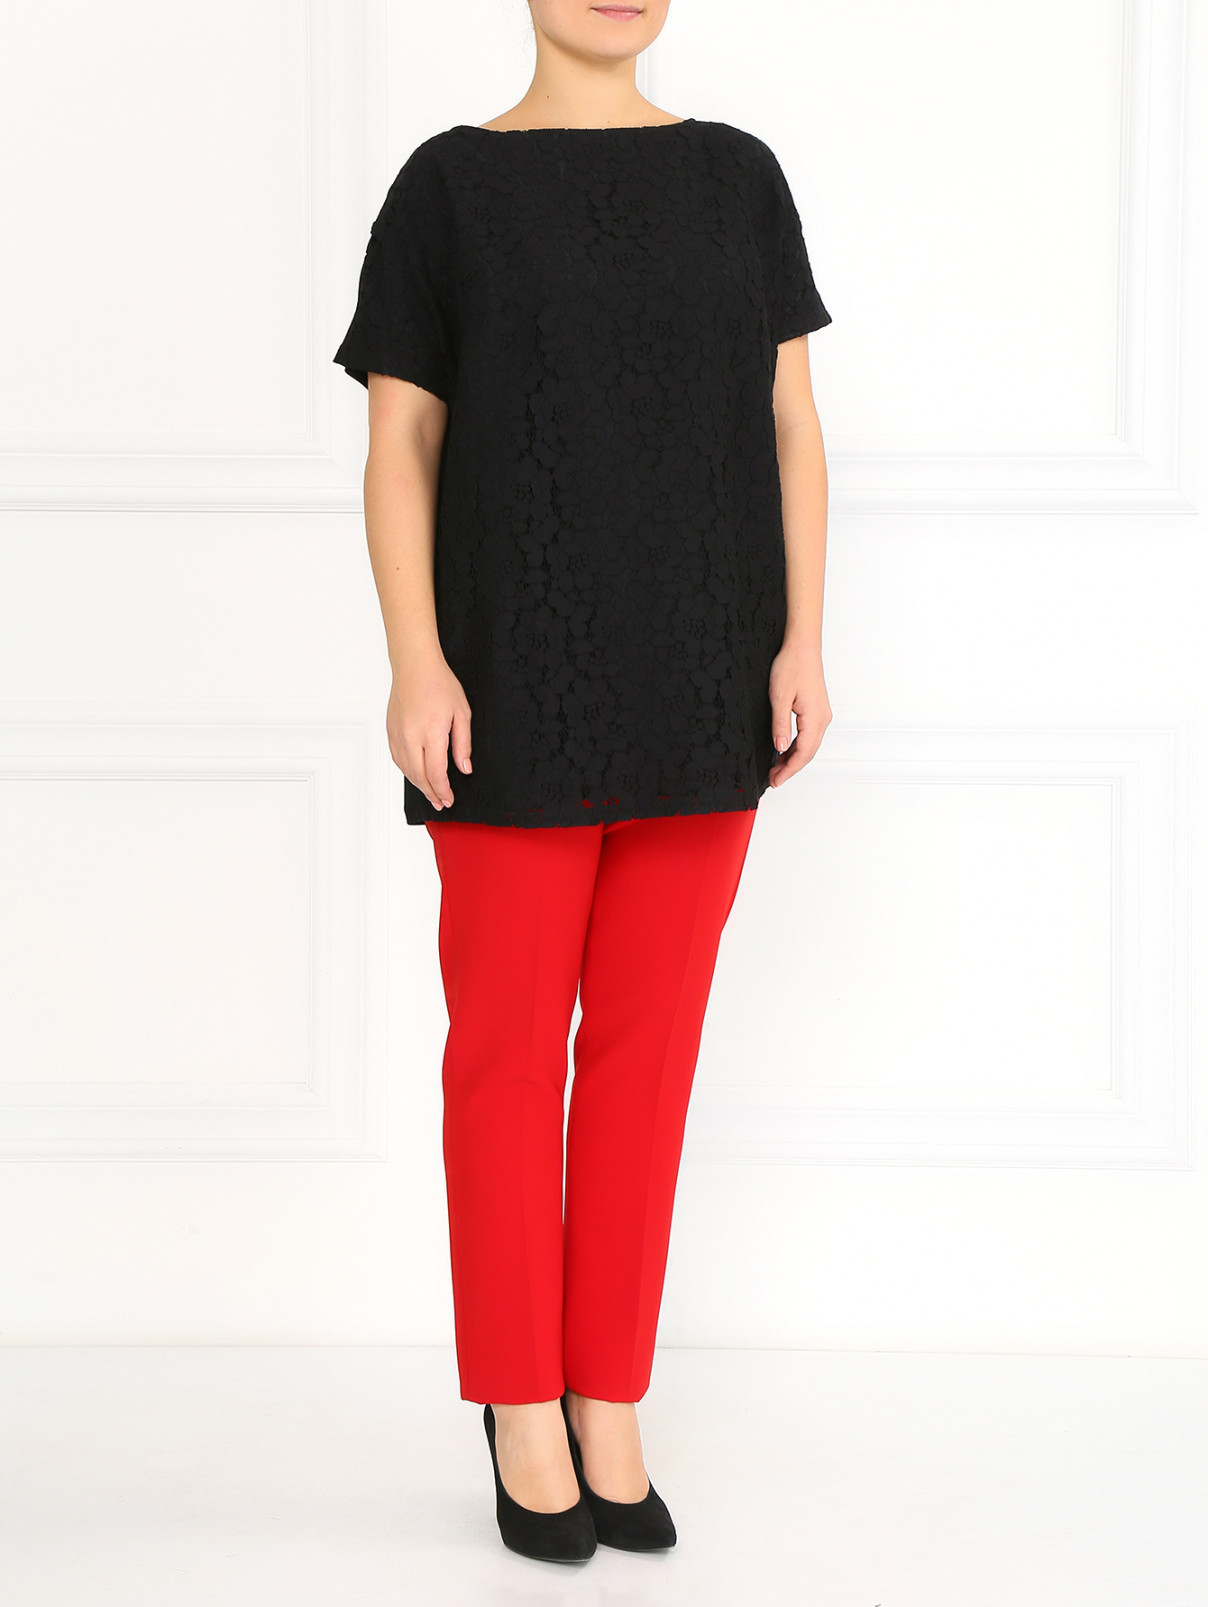 Зауженные брюки со стрелками Marina Rinaldi  –  Модель Общий вид  – Цвет:  Красный